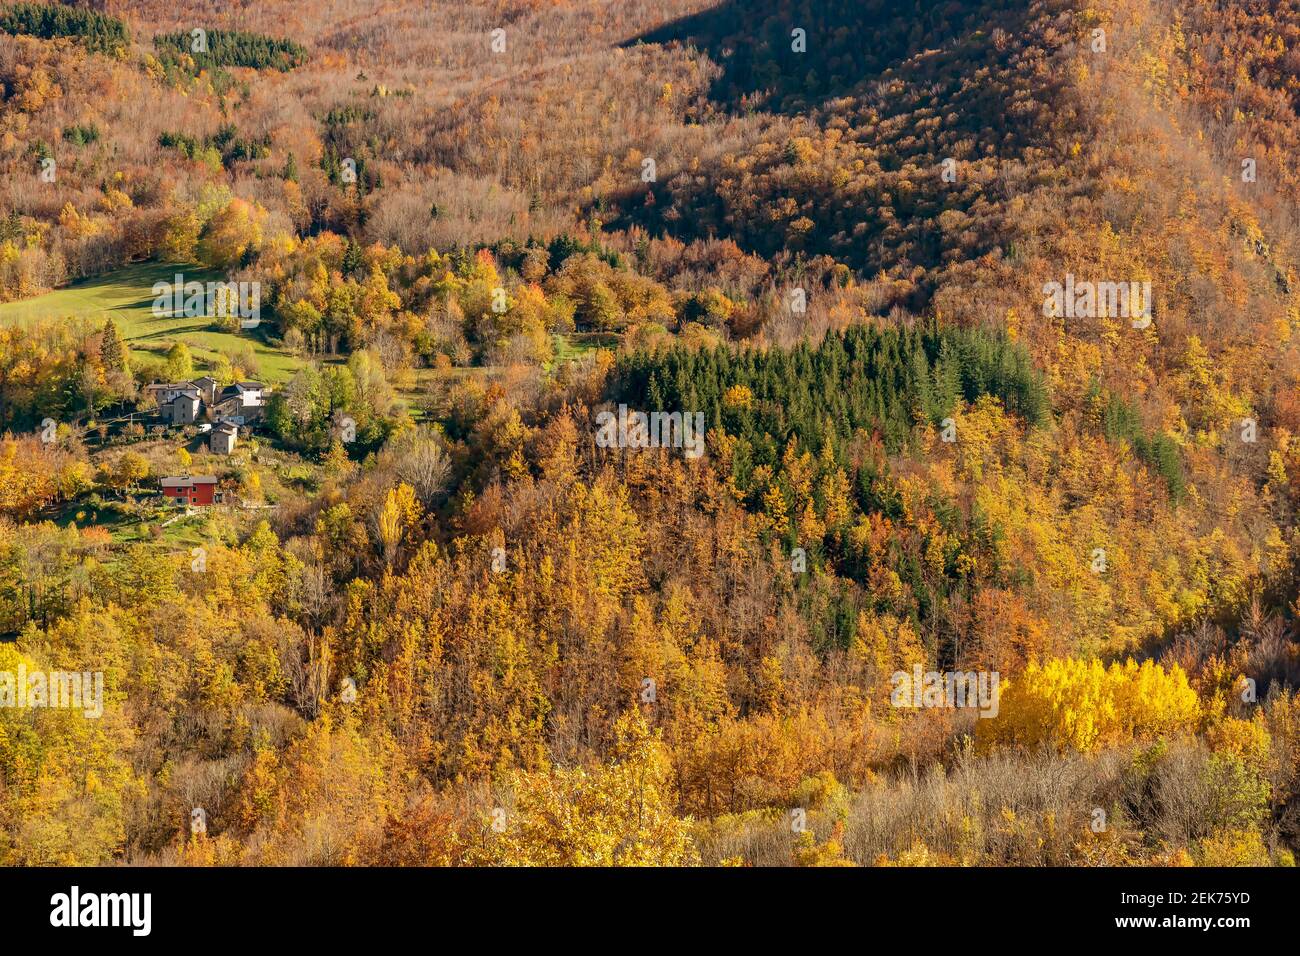 Uno scorcio dell'Appennino Emiliano tra Pievepelago e Fiumalbo, Italia, con gli alberi dai colori colorati dell'autunno Foto Stock